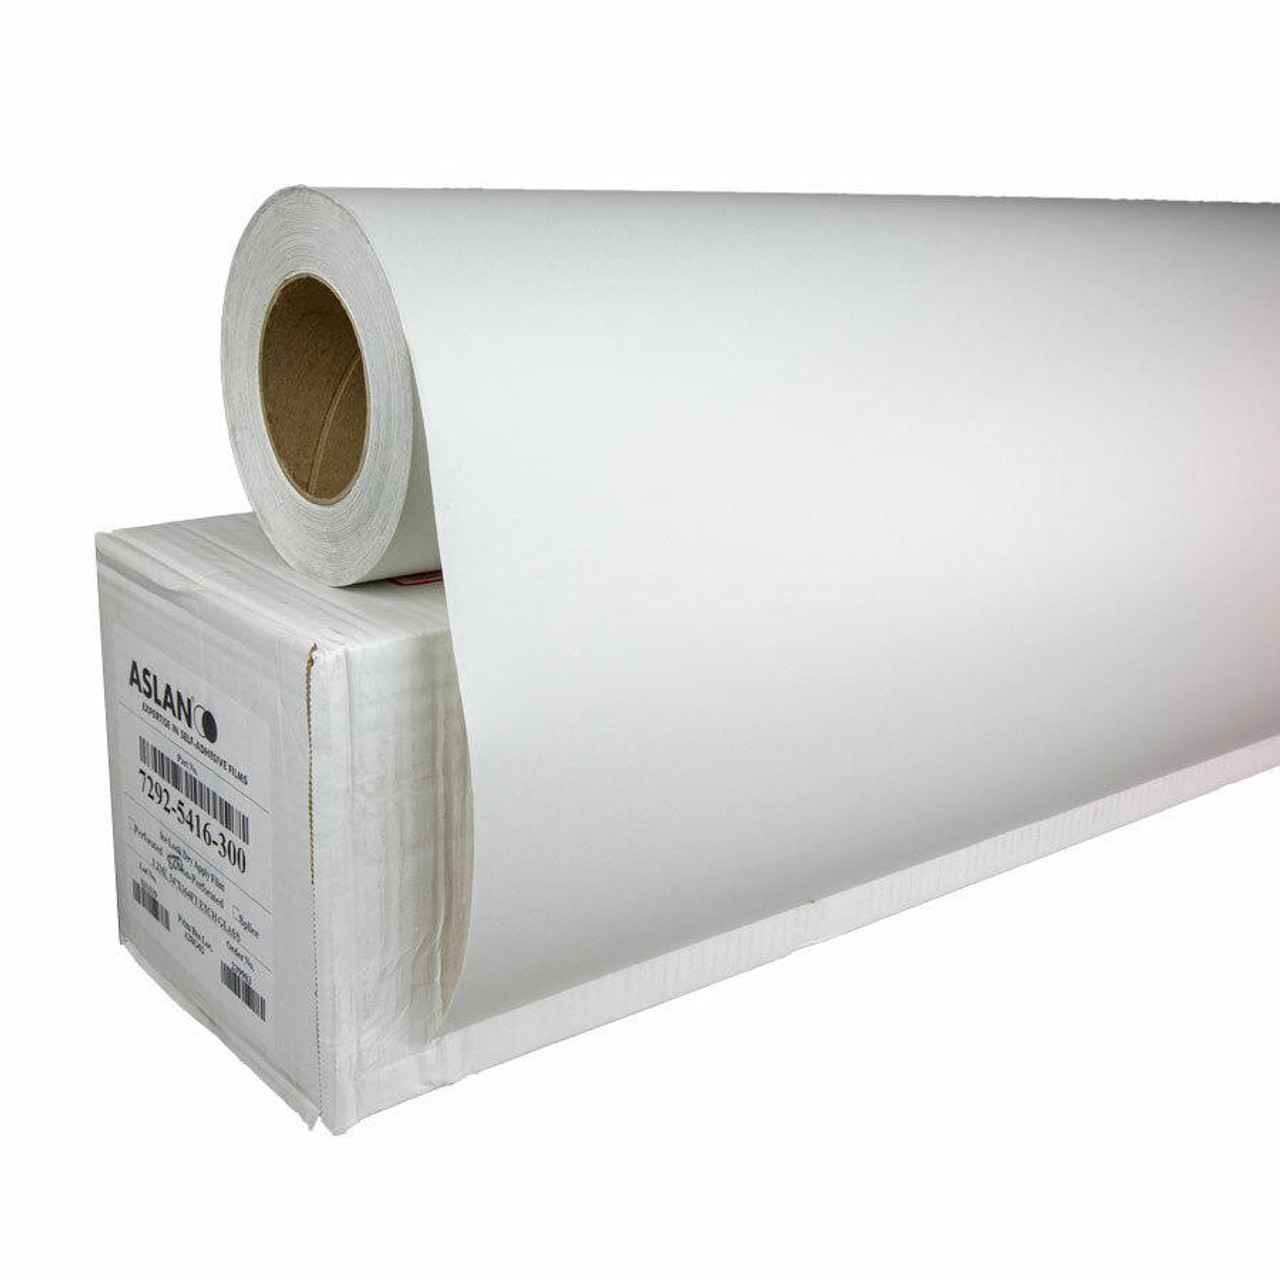 20 x 15 White Tissue Paper 960